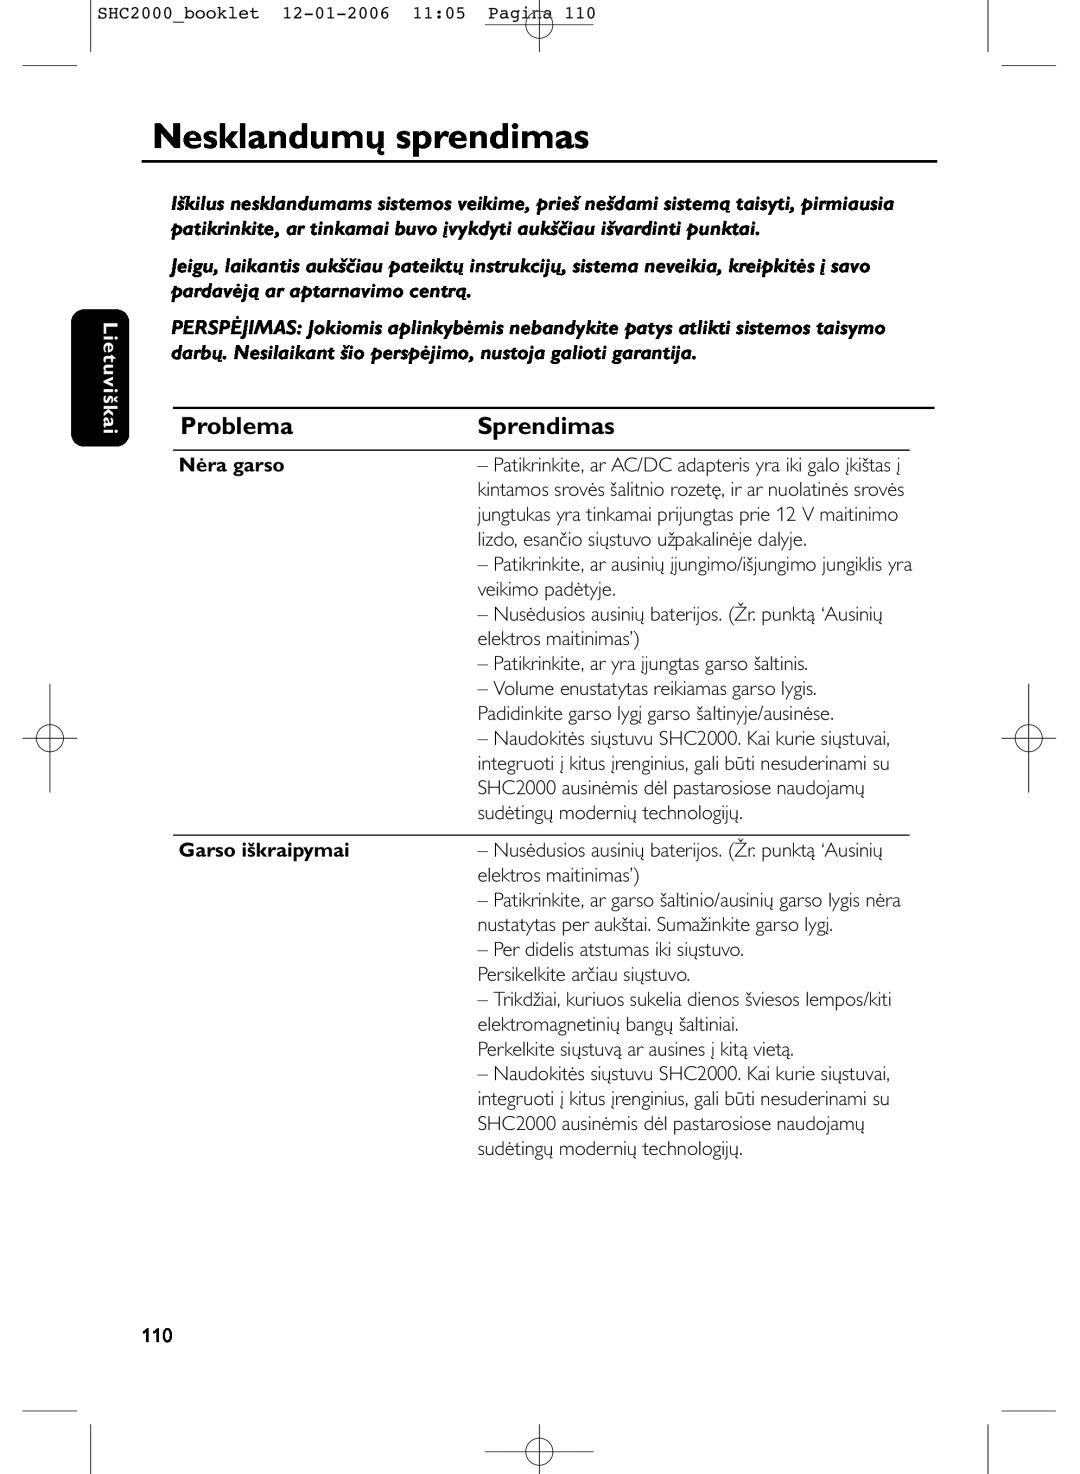 Philips SHC2000 manual Nesklandumų sprendimas, Sprendimas, Problema, Lietuviškai, Nėra garso, Garso iškraipymai 